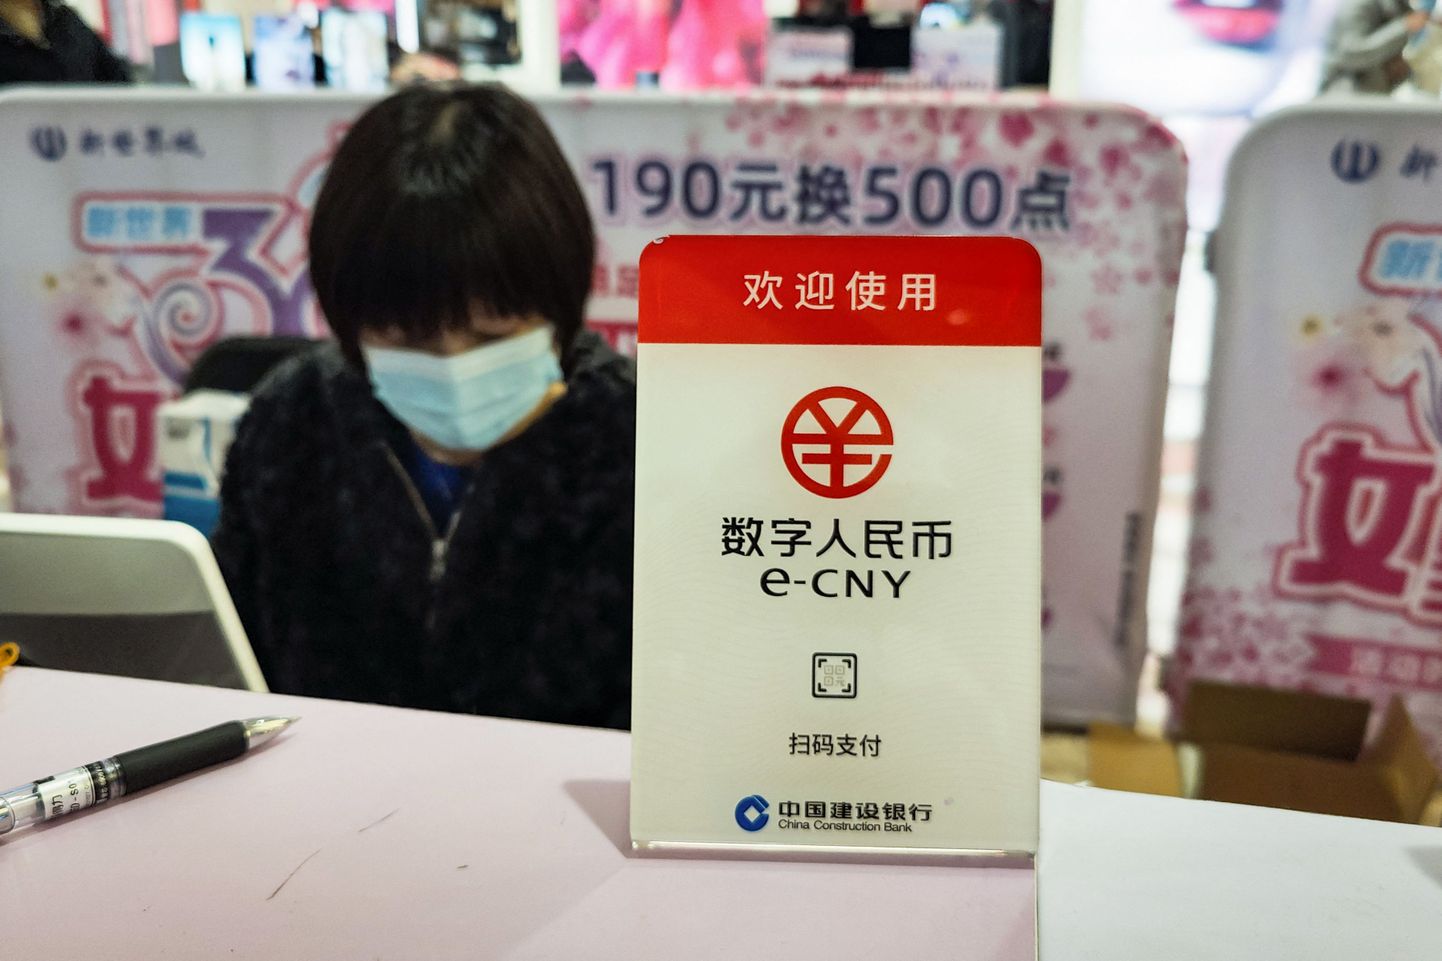 Silt näitab, et antud kaubamaja kassasüsteem aktsepteerib vaid Hiina keskpanga poolt välja antud digitaalset valuutat e-CNY ehk e-jüaani.